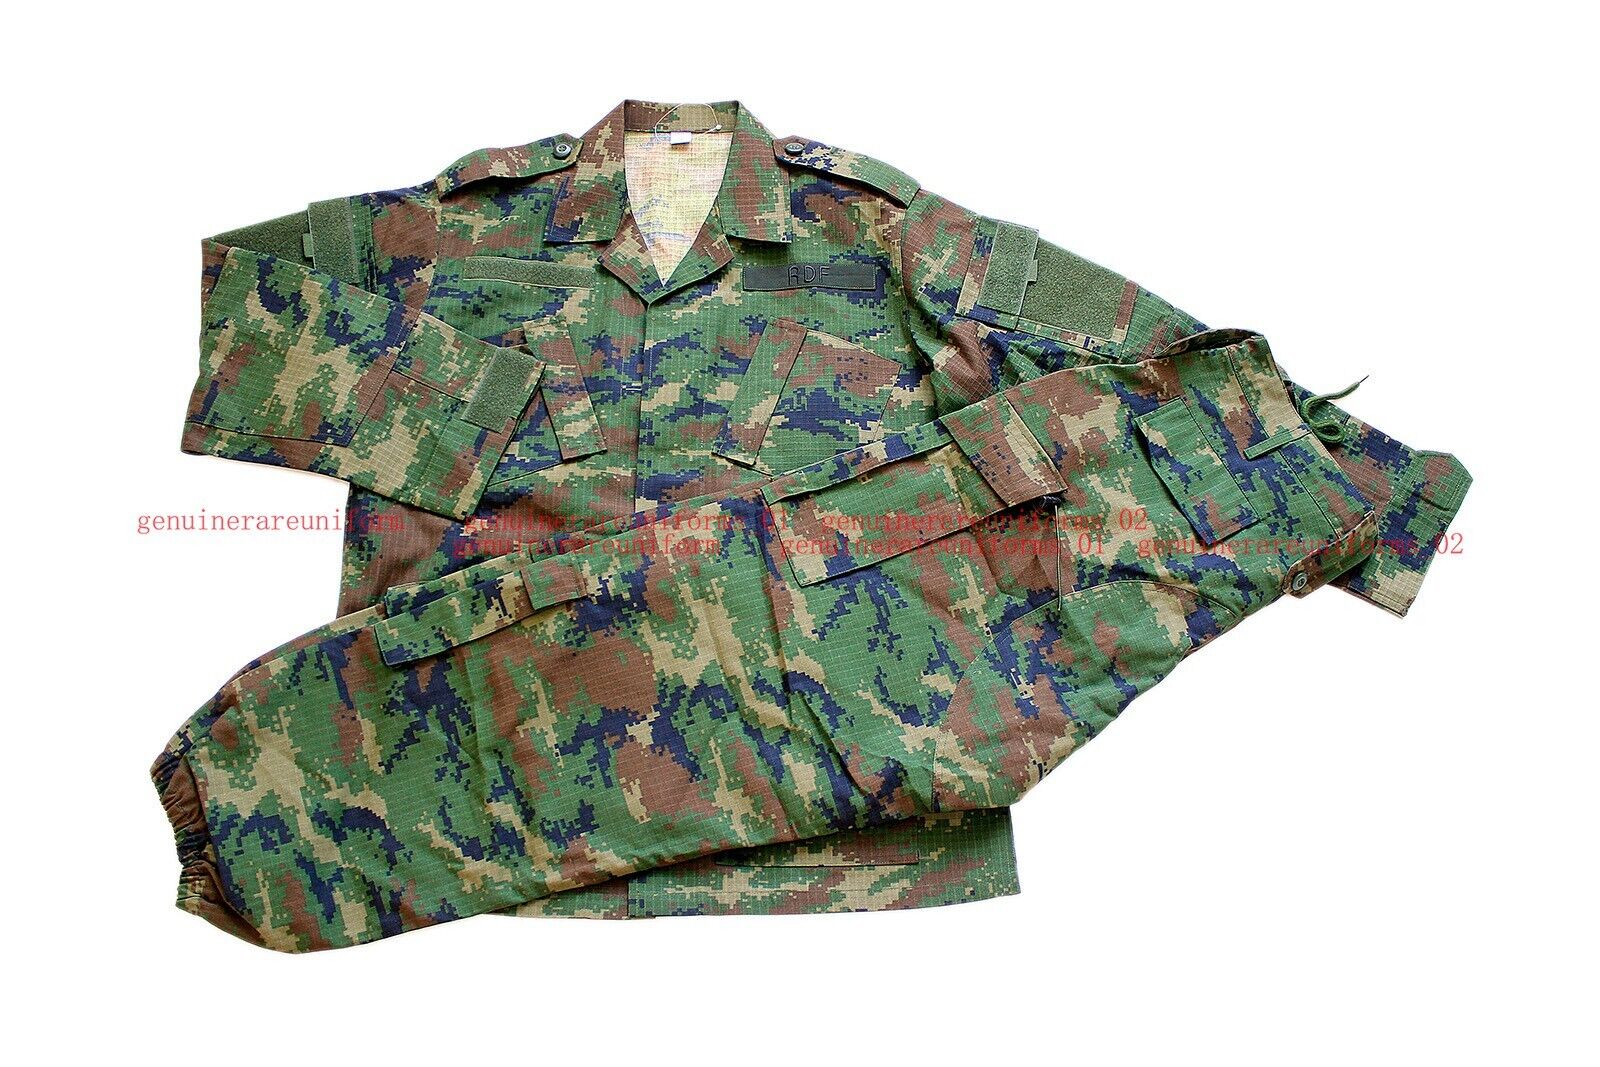 Rare Genuine African Rwanda Defense Force Woodland Digital Camo BDU Uniform MR